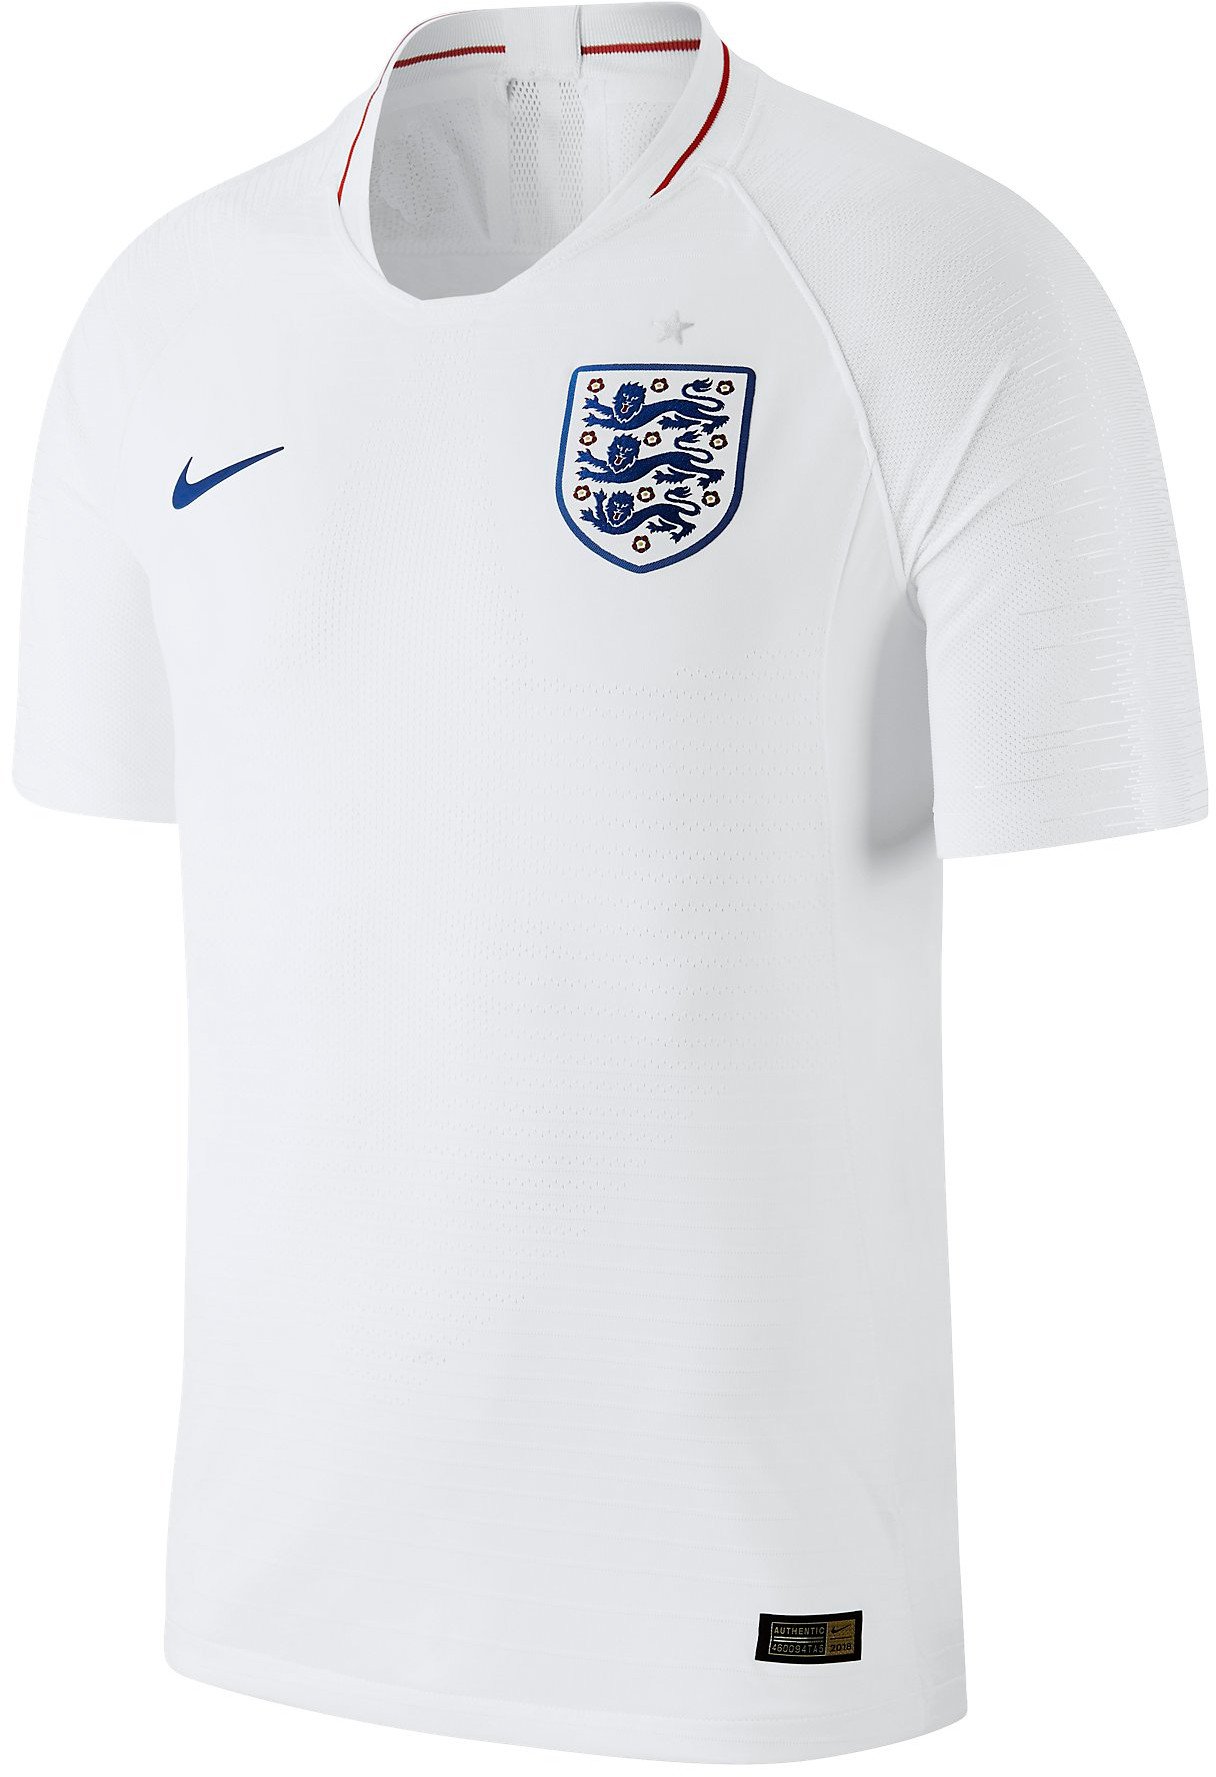 Originální domácí dres Nike England Vapor 2018/2019